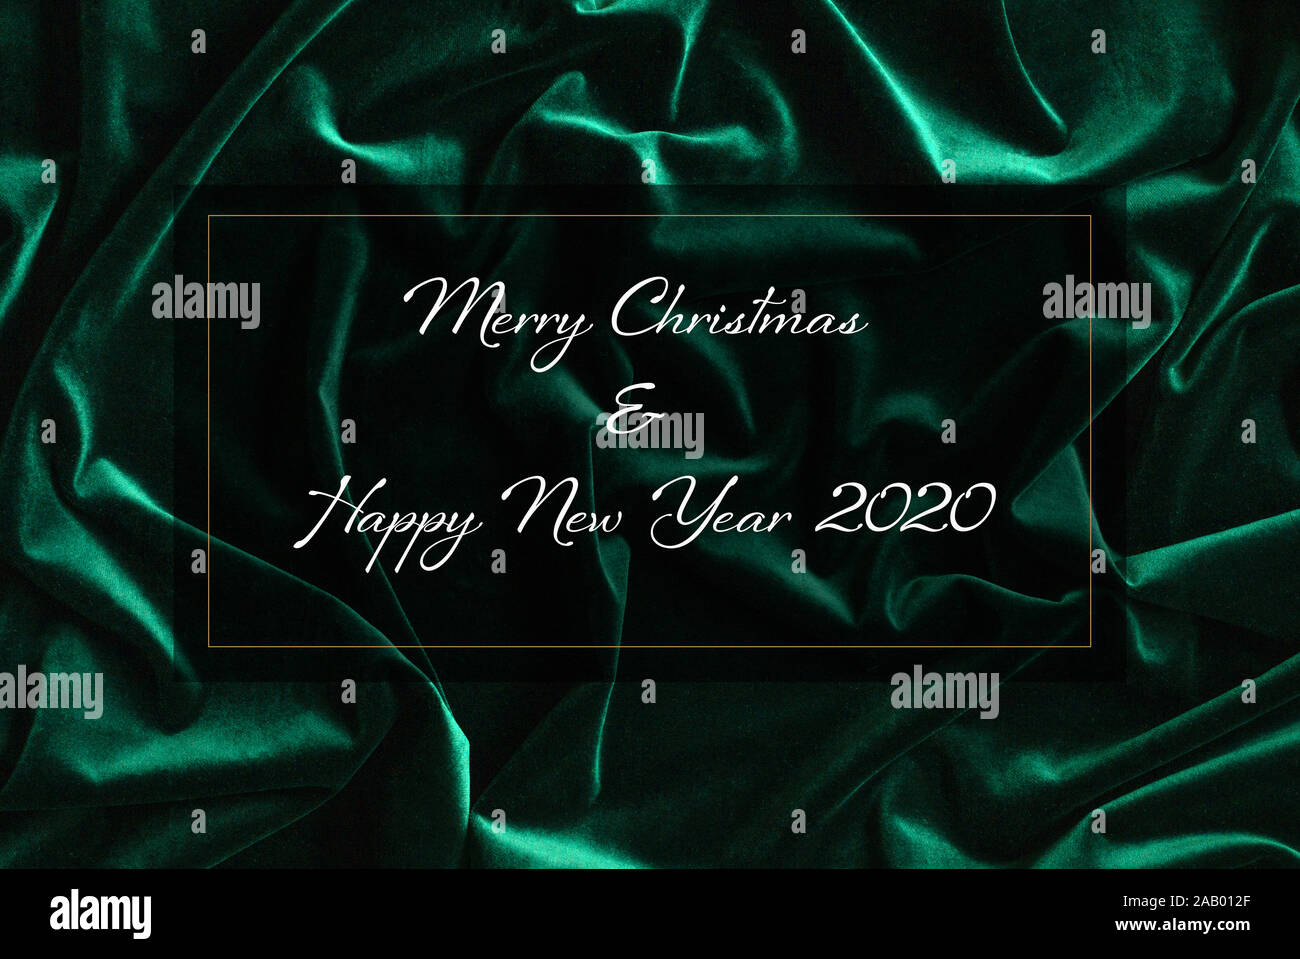 Elegante Weihnachtskarte. Auf grünem Samt Hintergrund, ein weißer Aufschrift frohe Weihnachten und einen guten Rutsch ins neue Jahr 2020. Begrüßungen in einem goldenen Rahmen. Stockfoto